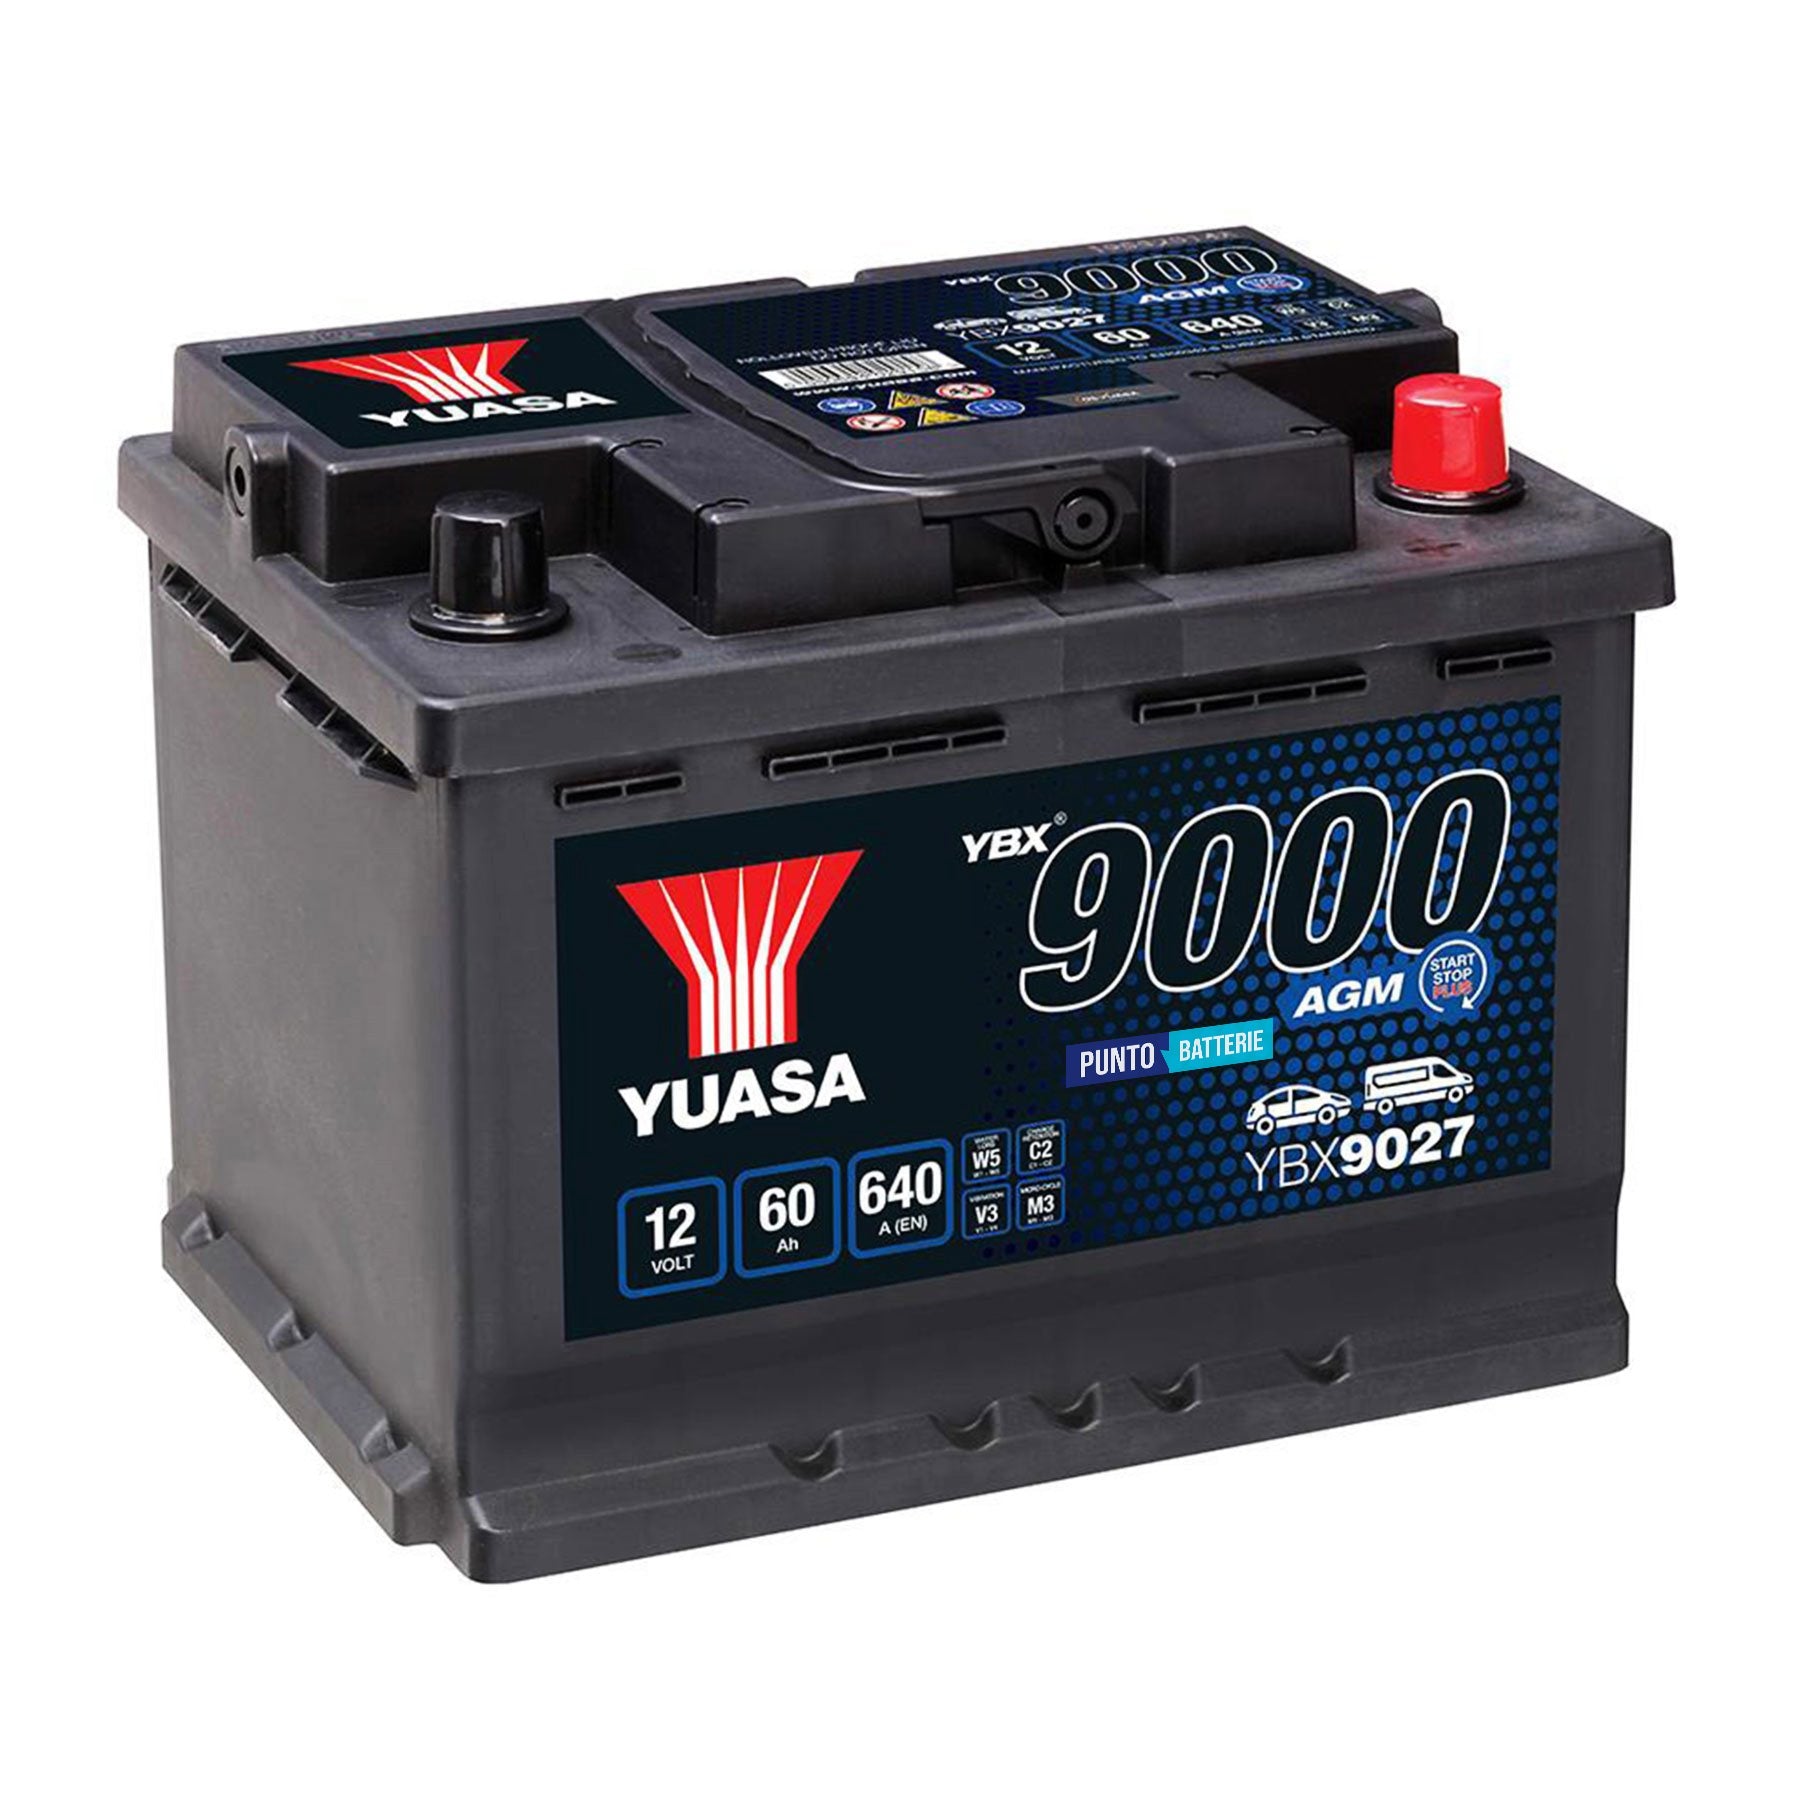 Batteria originale Yuasa YBX9000 YBX9027, dimensioni 243 x 175 x 190, polo positivo a destra, 12 volt, 60 amperora, 640 ampere, AGM. Batteria per auto e veicoli leggeri con start e stop.